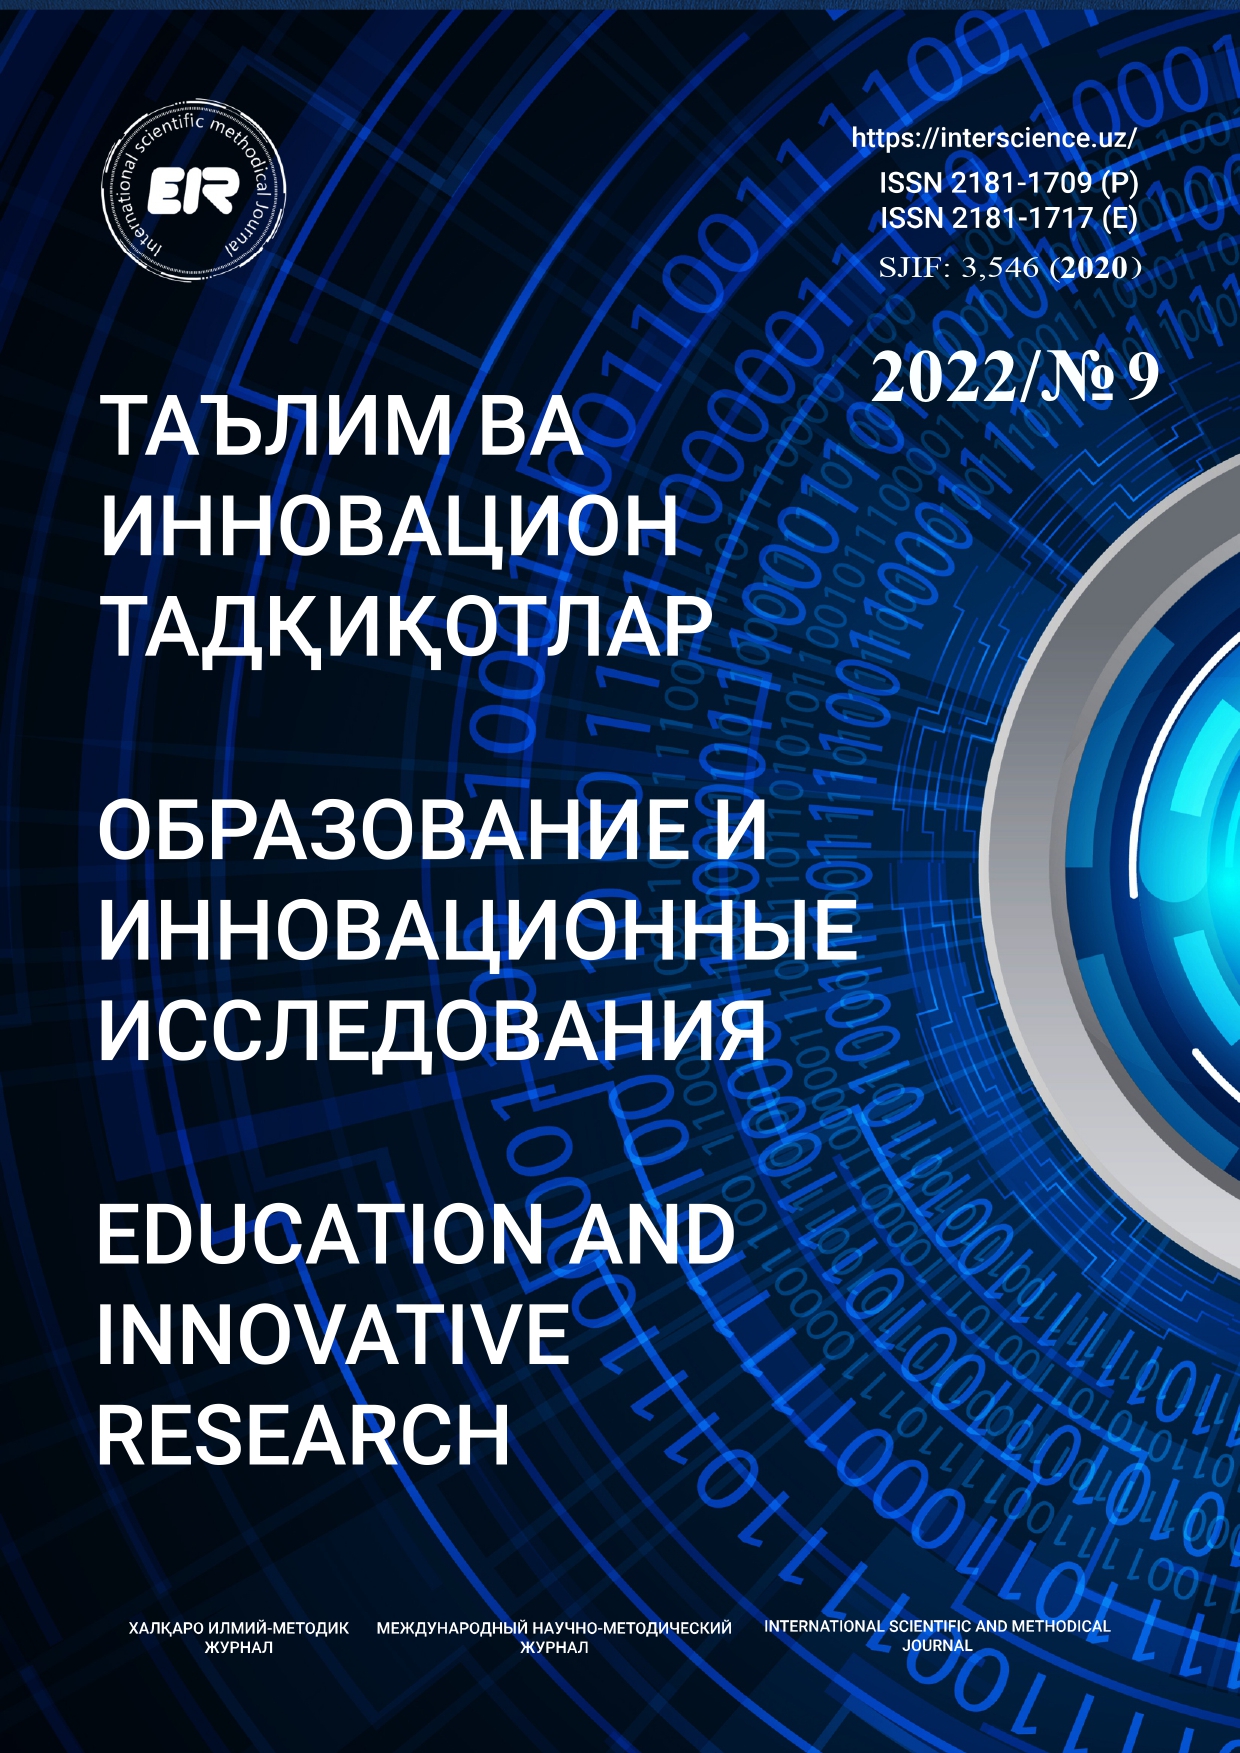 					Показать № 9 (2022): Образование и инновационные исследования
				